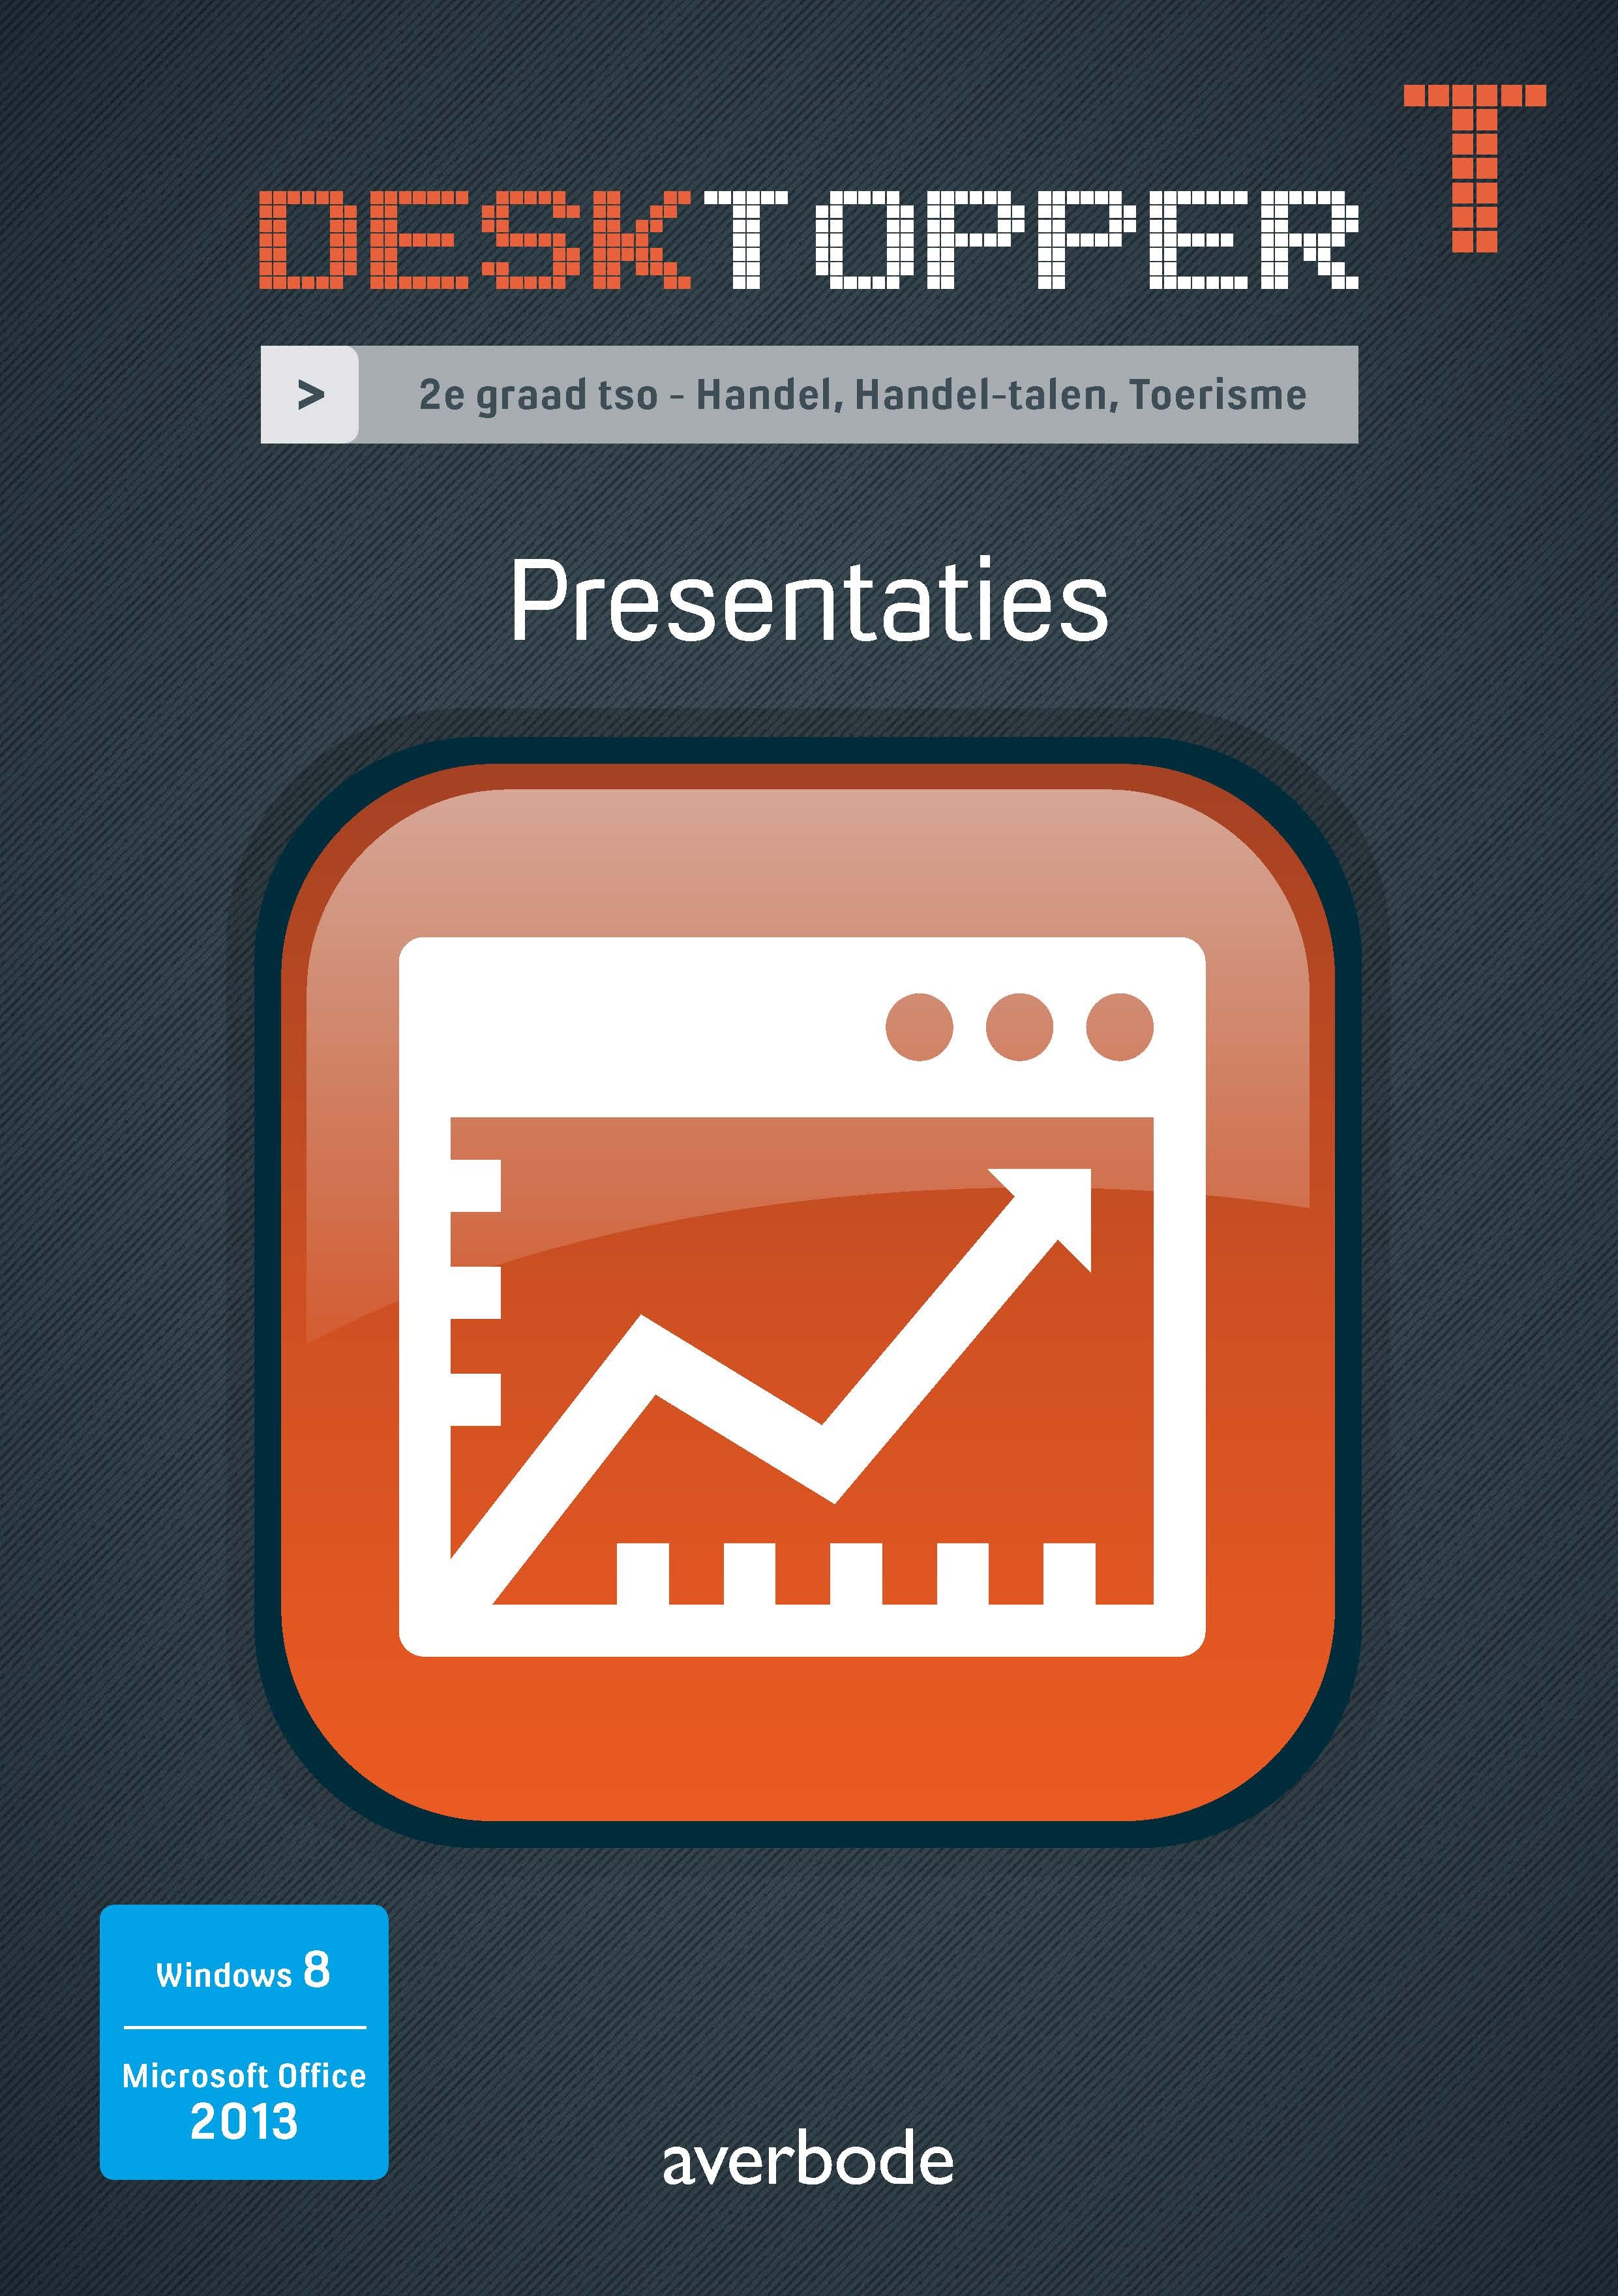 Desktopper T Presentaties Windows 8 Office 2013. 2e graad tso - Handel, Handel-talen, Toerisme